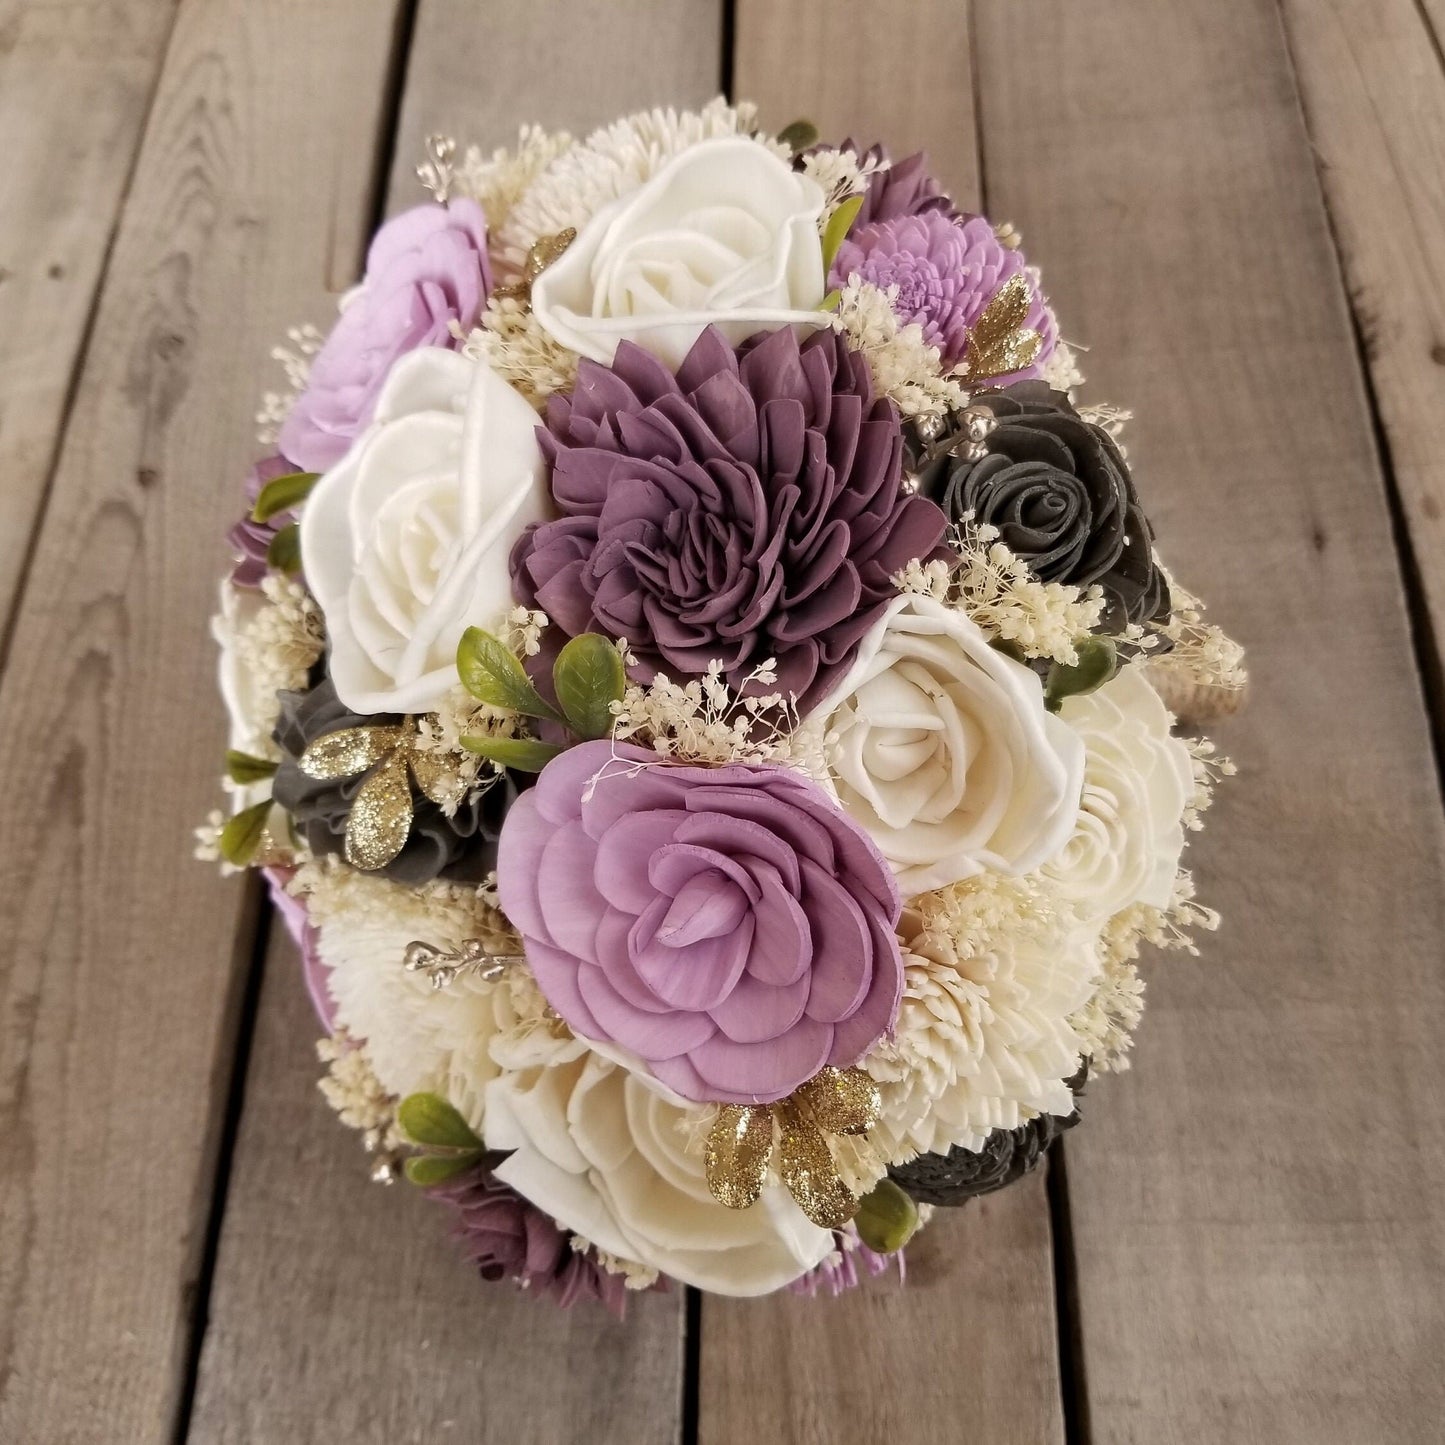 Wood Flowers Bouquet, Plum Wooden Bouquets, Lavender Bridal Bouquet, Wooden Bridal Flowers, Wood Wedding Flowers, Bouquet for Bride